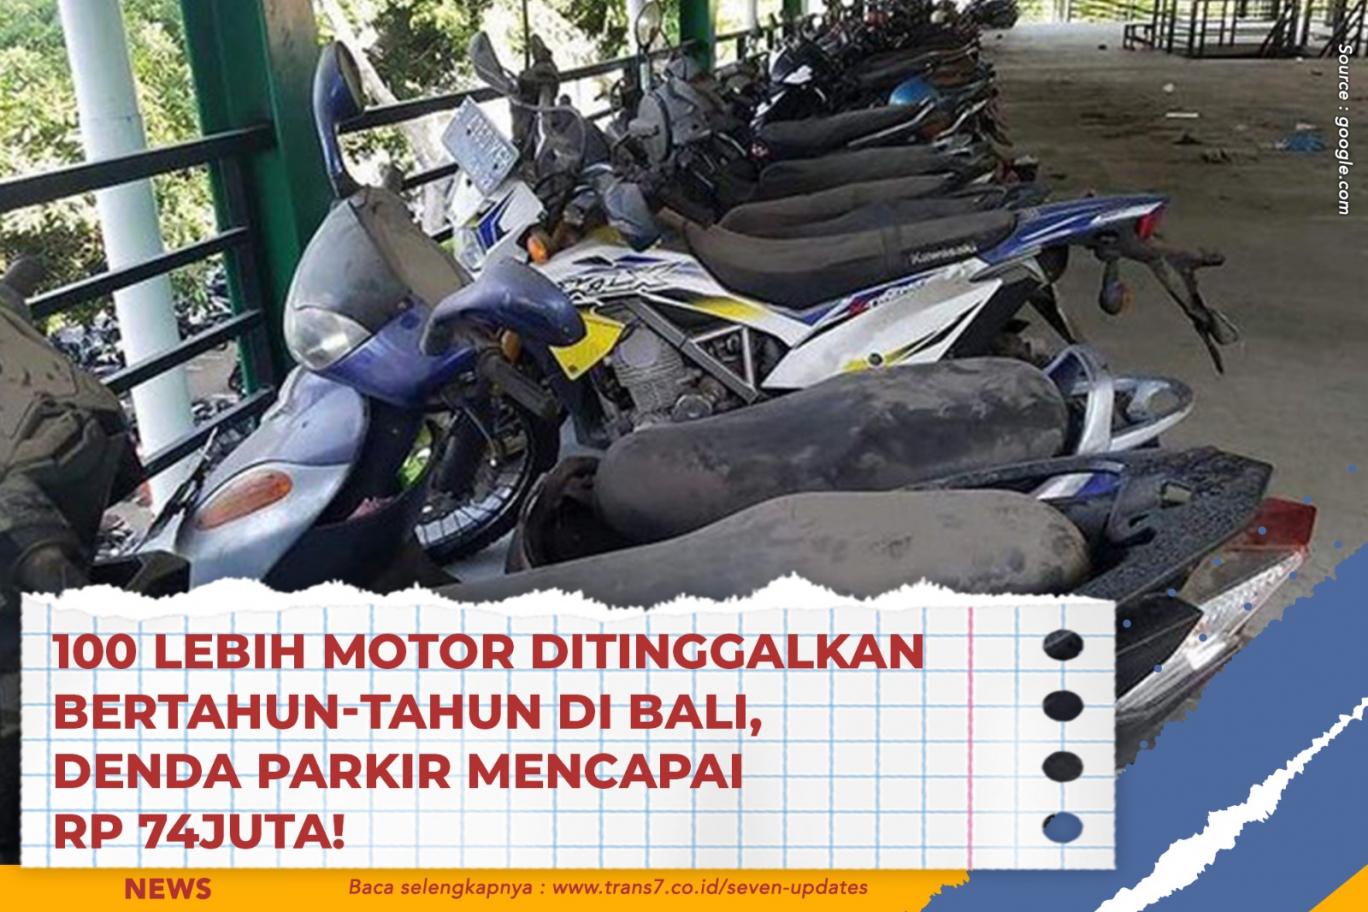 100 Lebih Motor Ditinggalkan Bertahun-Tahun Di Bali, Denda Parkir Mencapai Rp 74Juta!